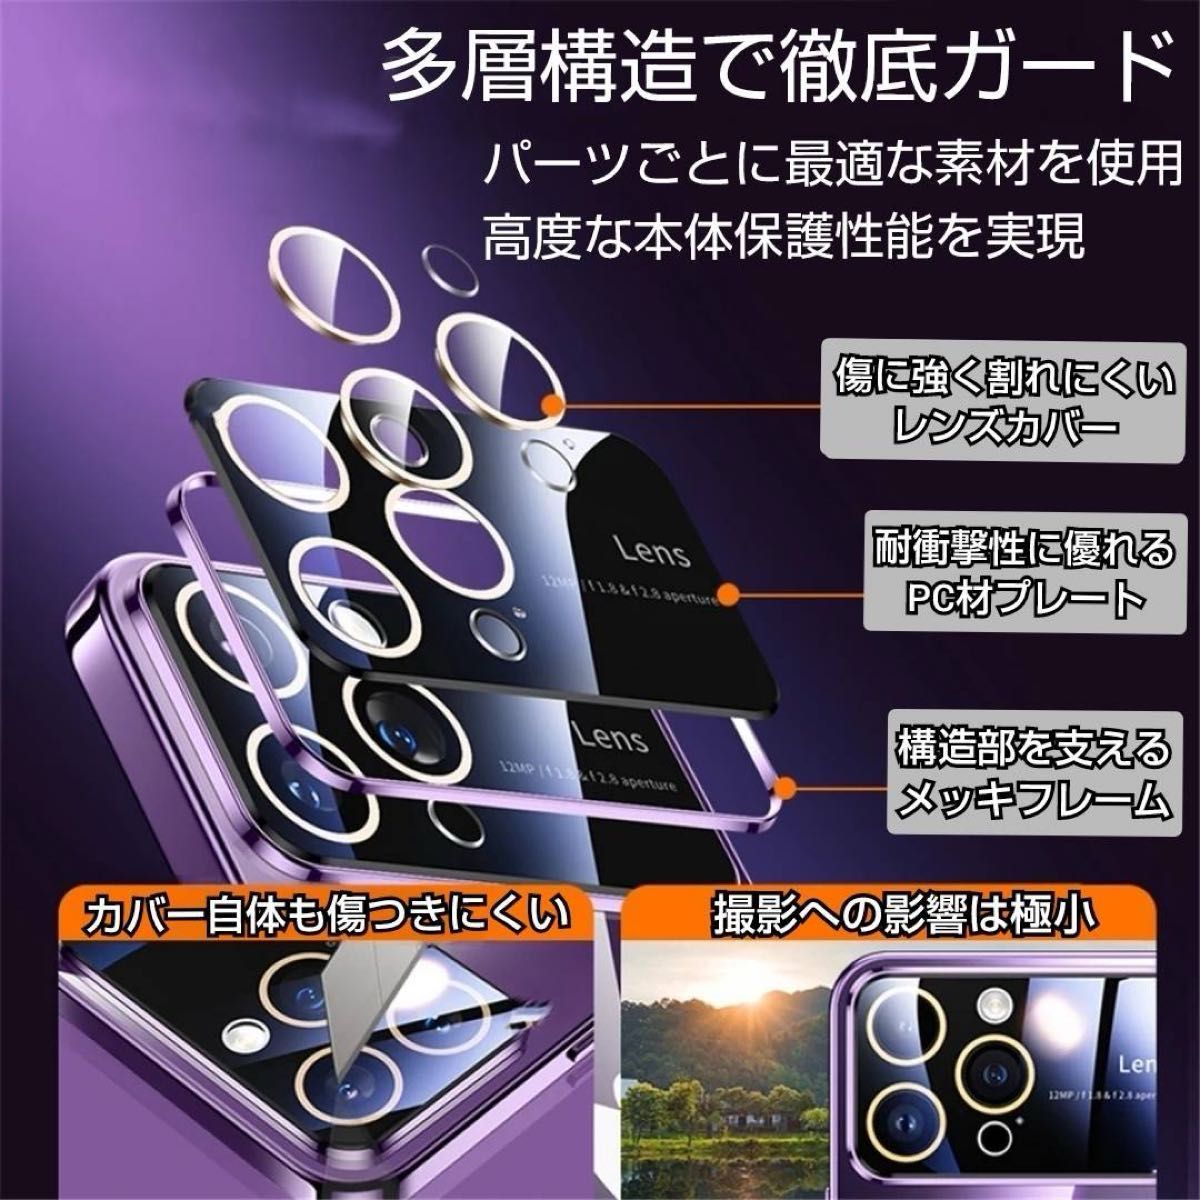 新機種 iPhone15 ブラック ケース カメラ レンズ保護 メッキ シリコン ケース レンズカバー 耐衝撃 高品質 人気 安い